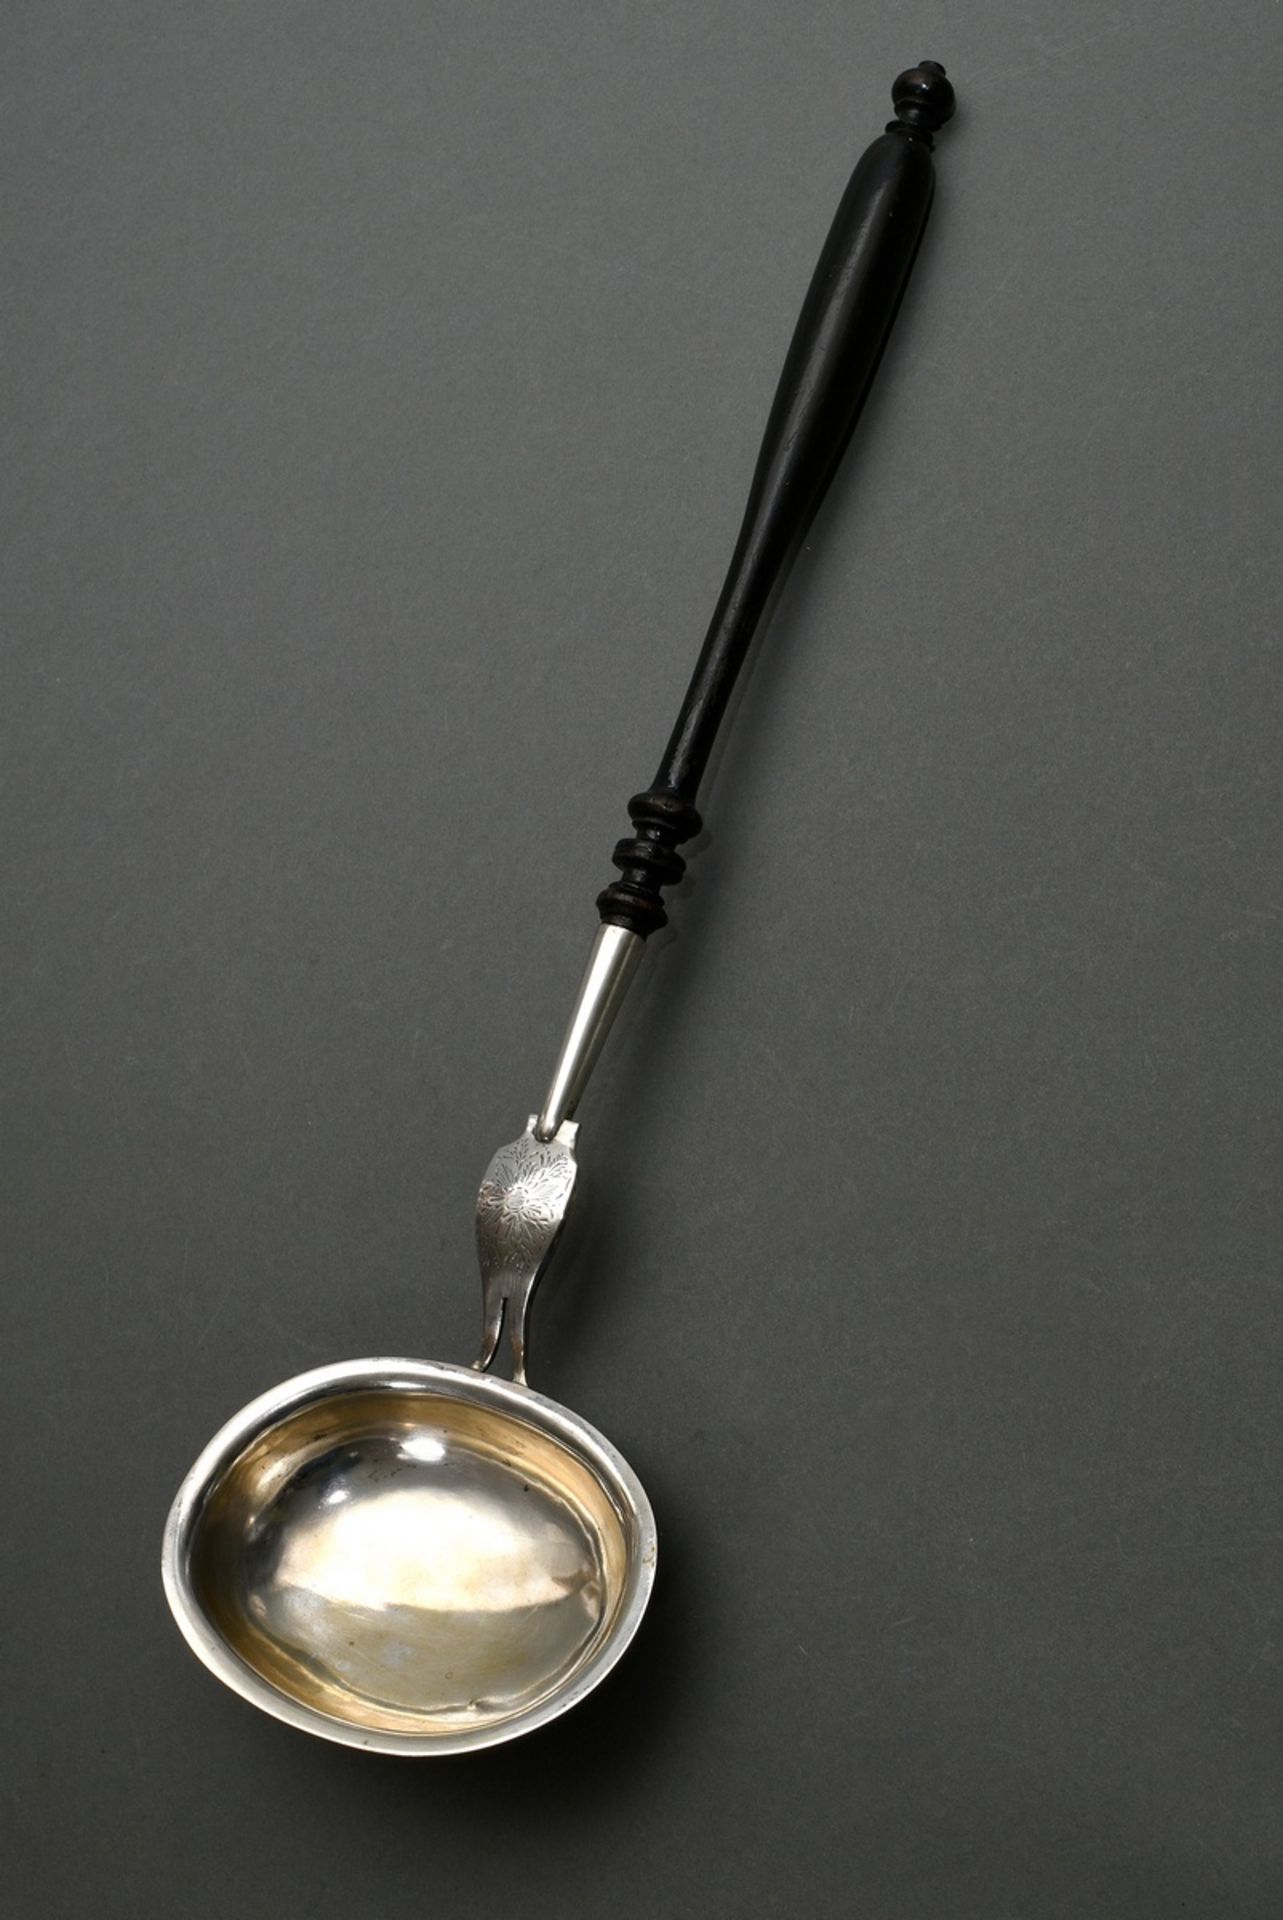 North German Biedermeier ladle with black turned wooden handle, floral engraving, engraved owner's 